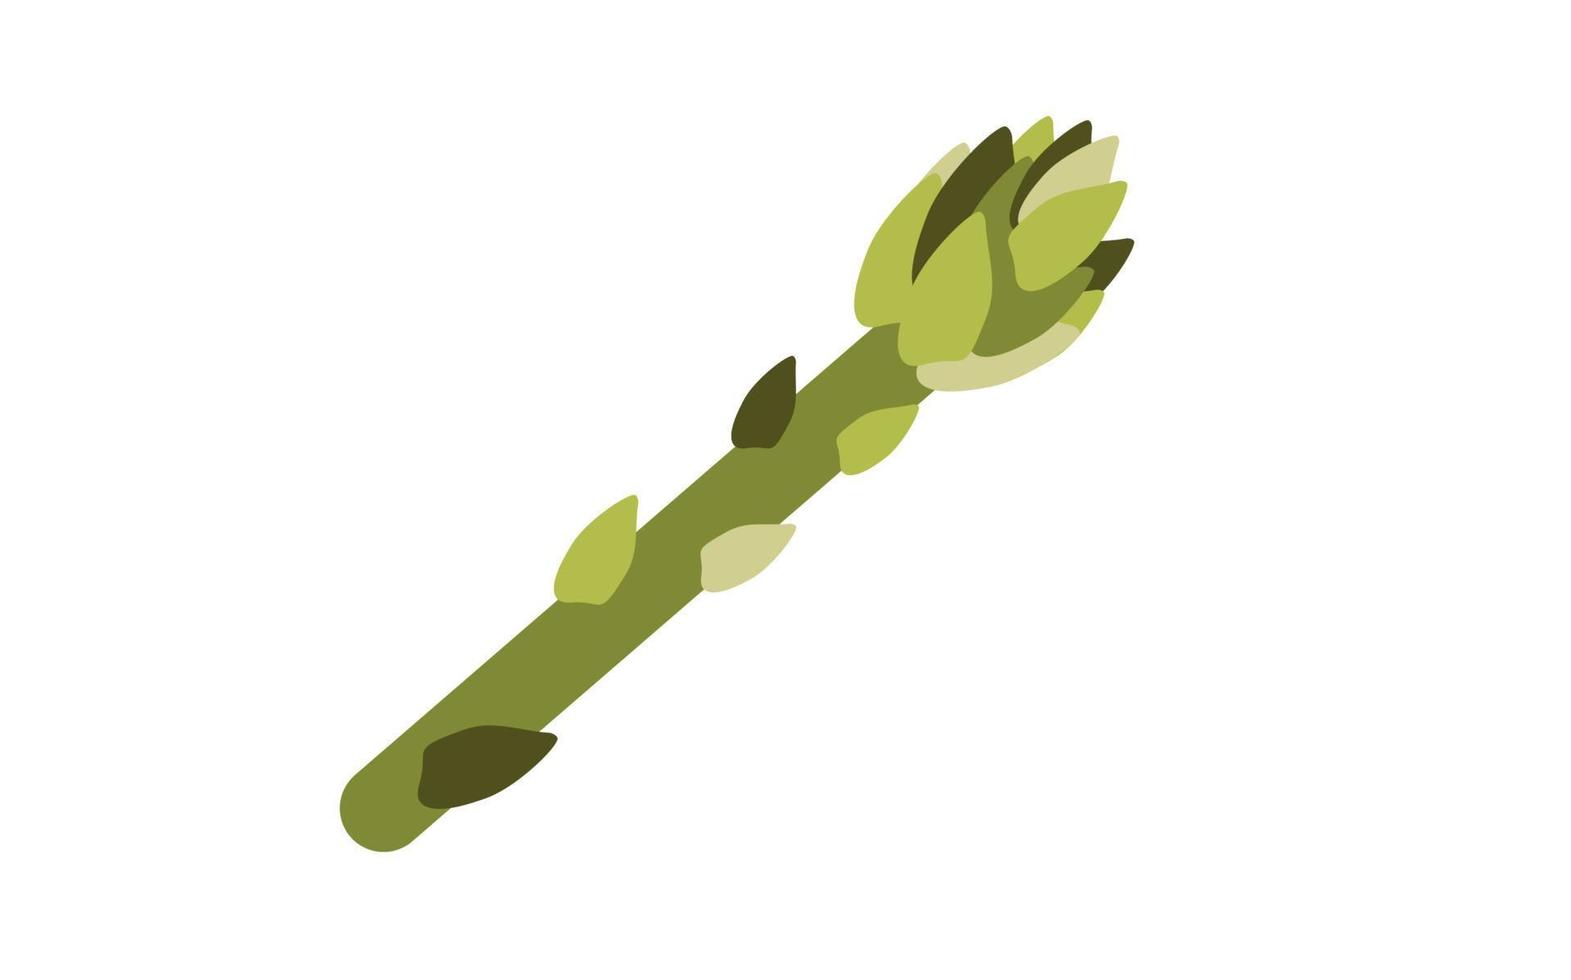 pianta sempreverde perenne di asparagi, cibo sano vegetariano, erba da cucina biologica su sfondo bianco. illustrazione vettoriale